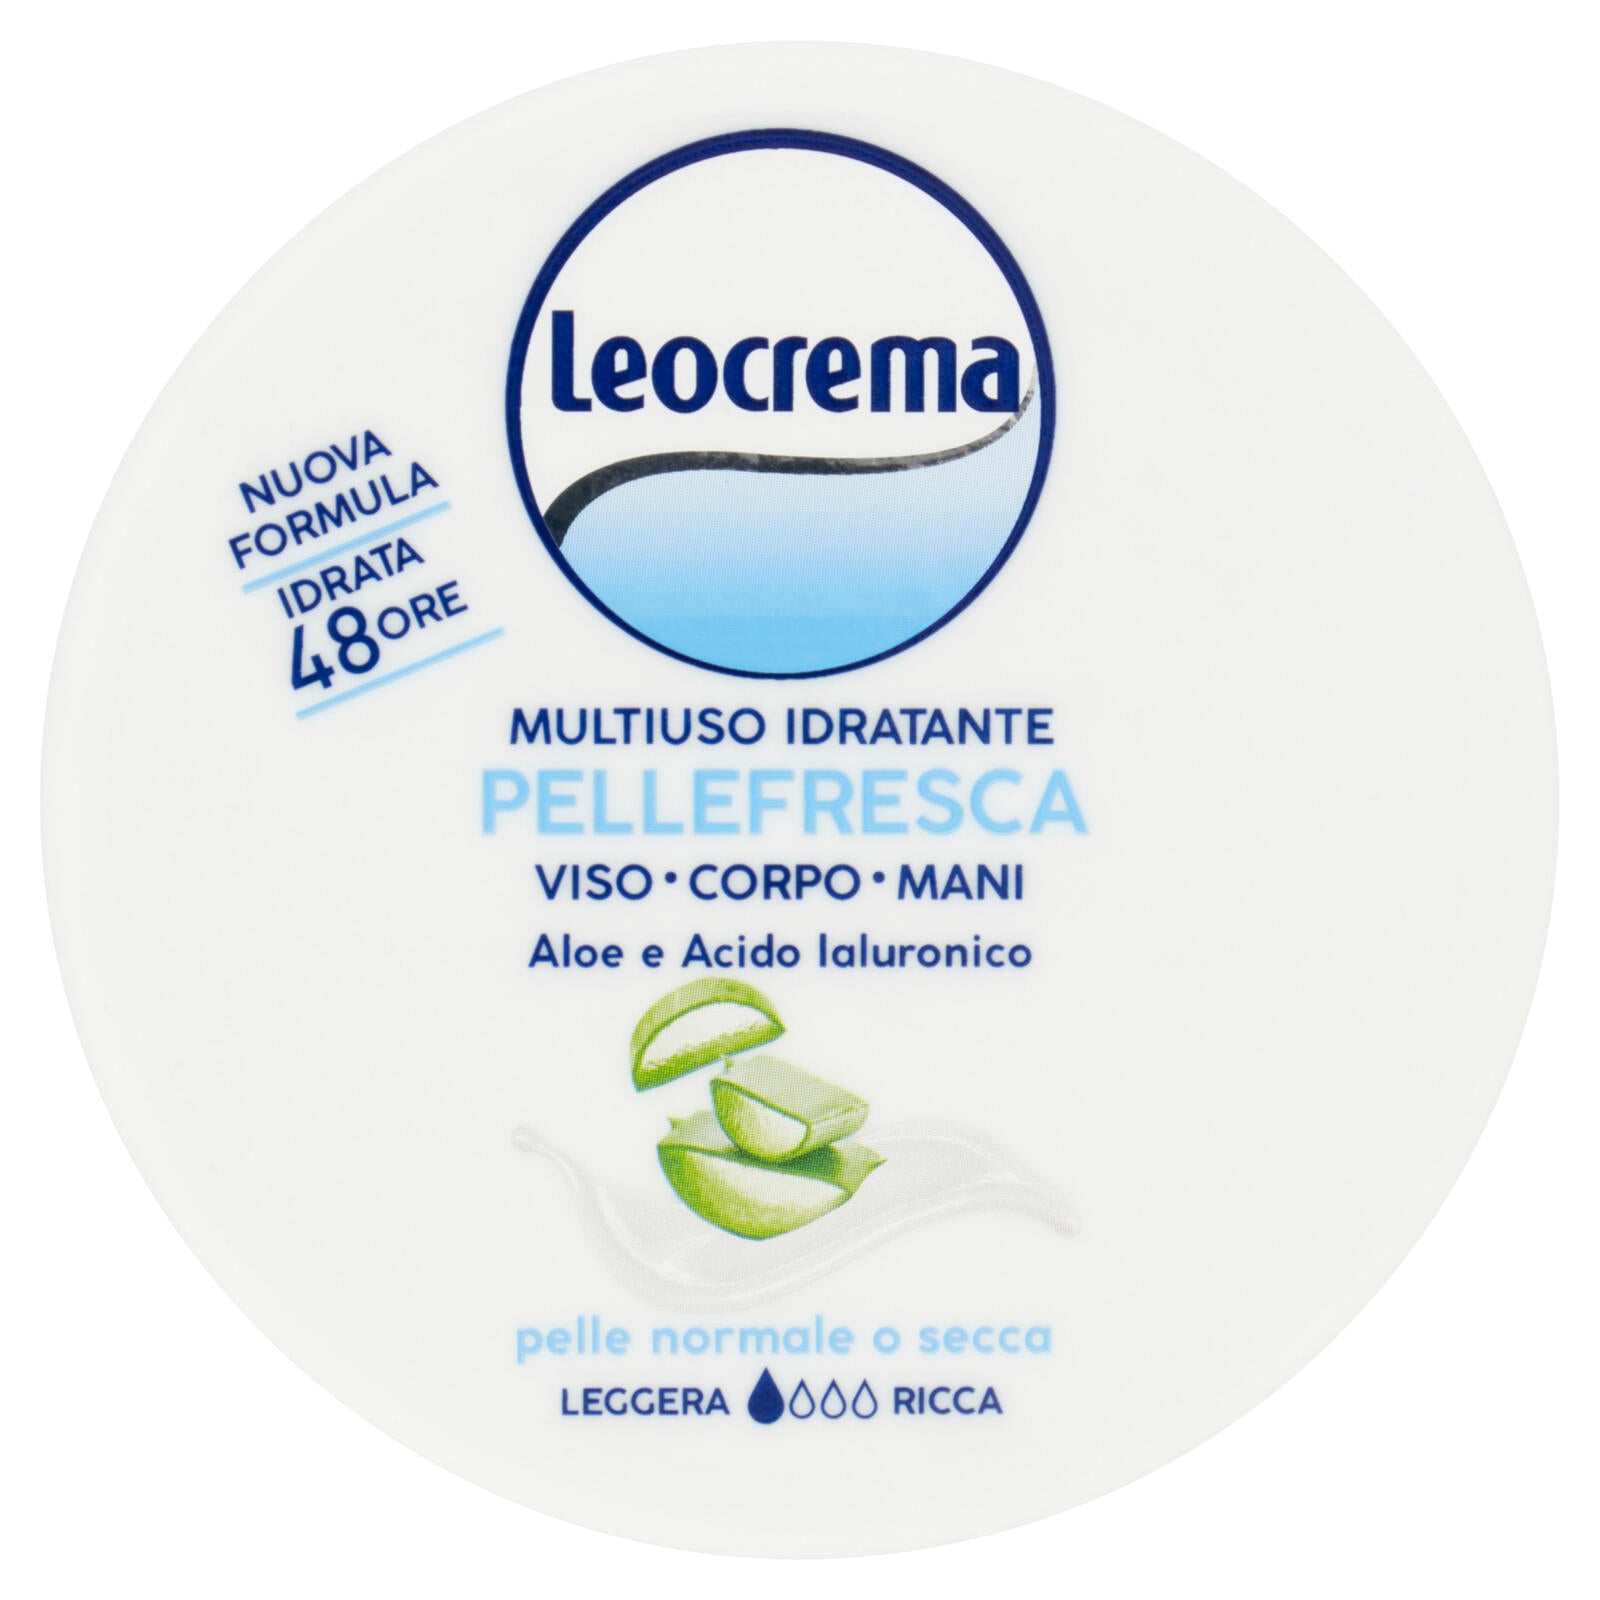 Leocrema Multiuso Idratante Pellefresca Viso - Corpo - Mani pelle normale o secca 150 ml